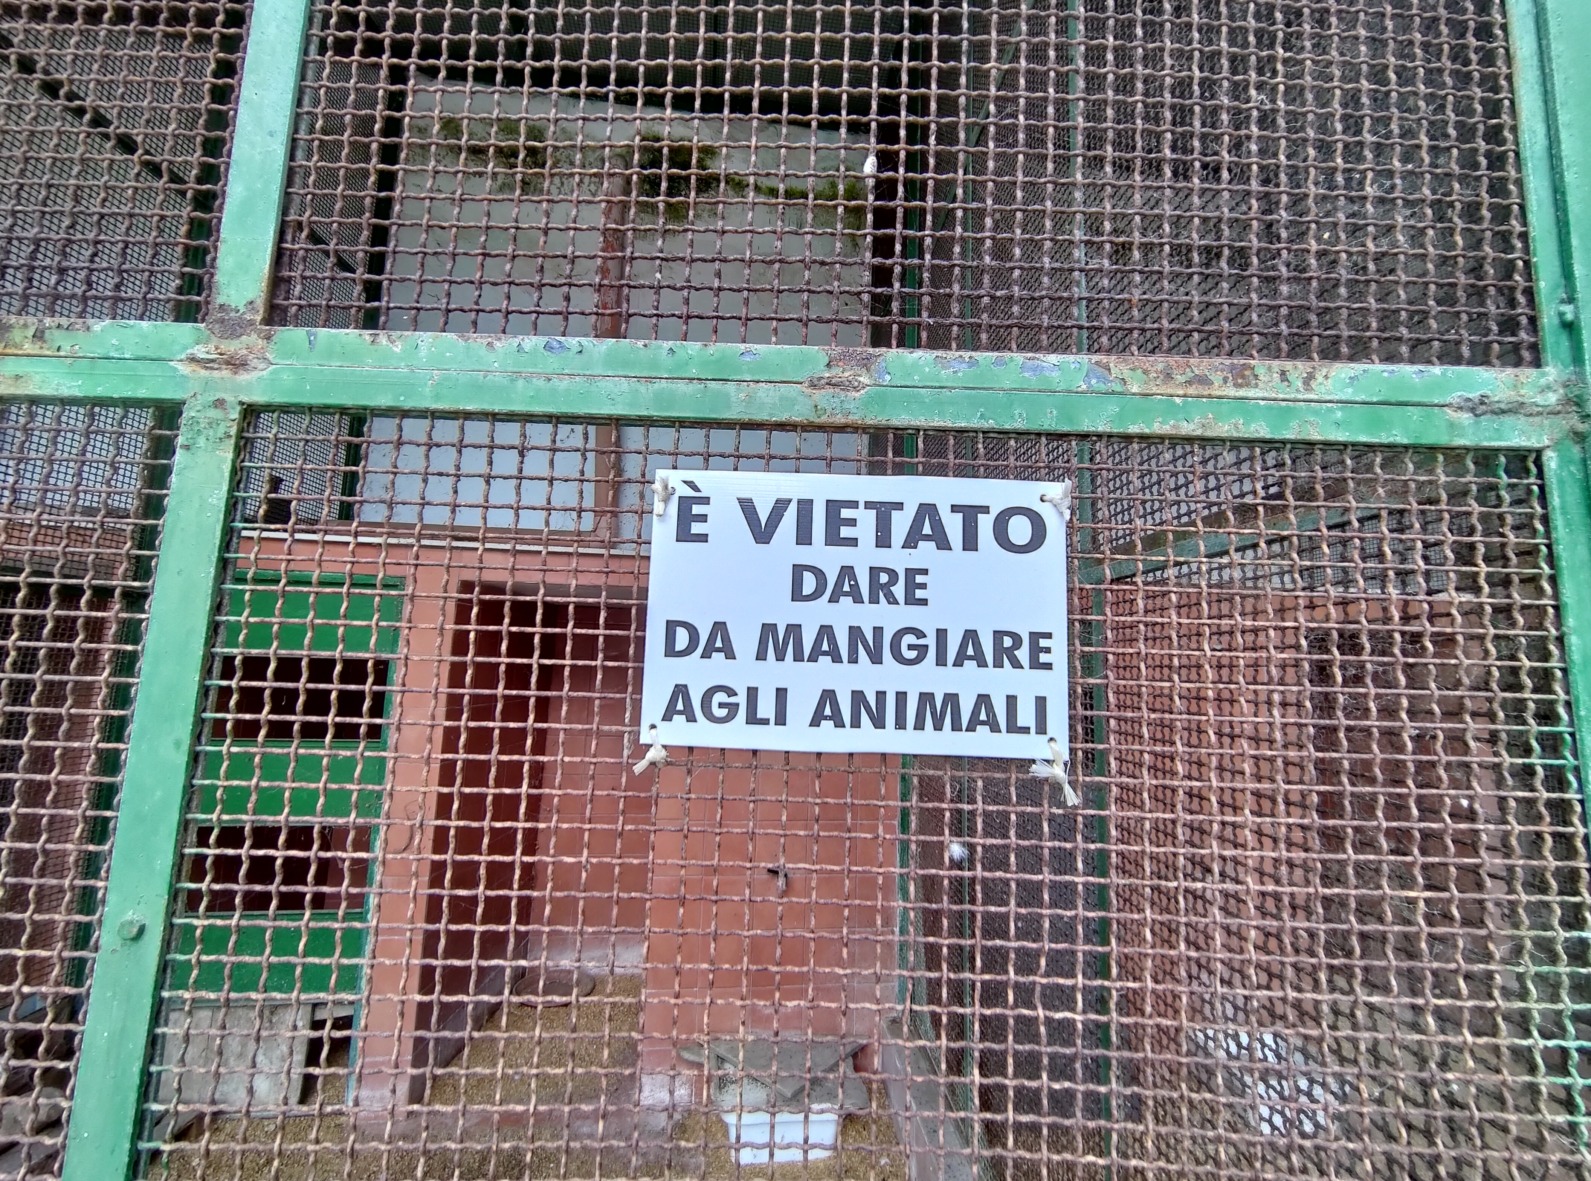 Füttern der Tiere verboten